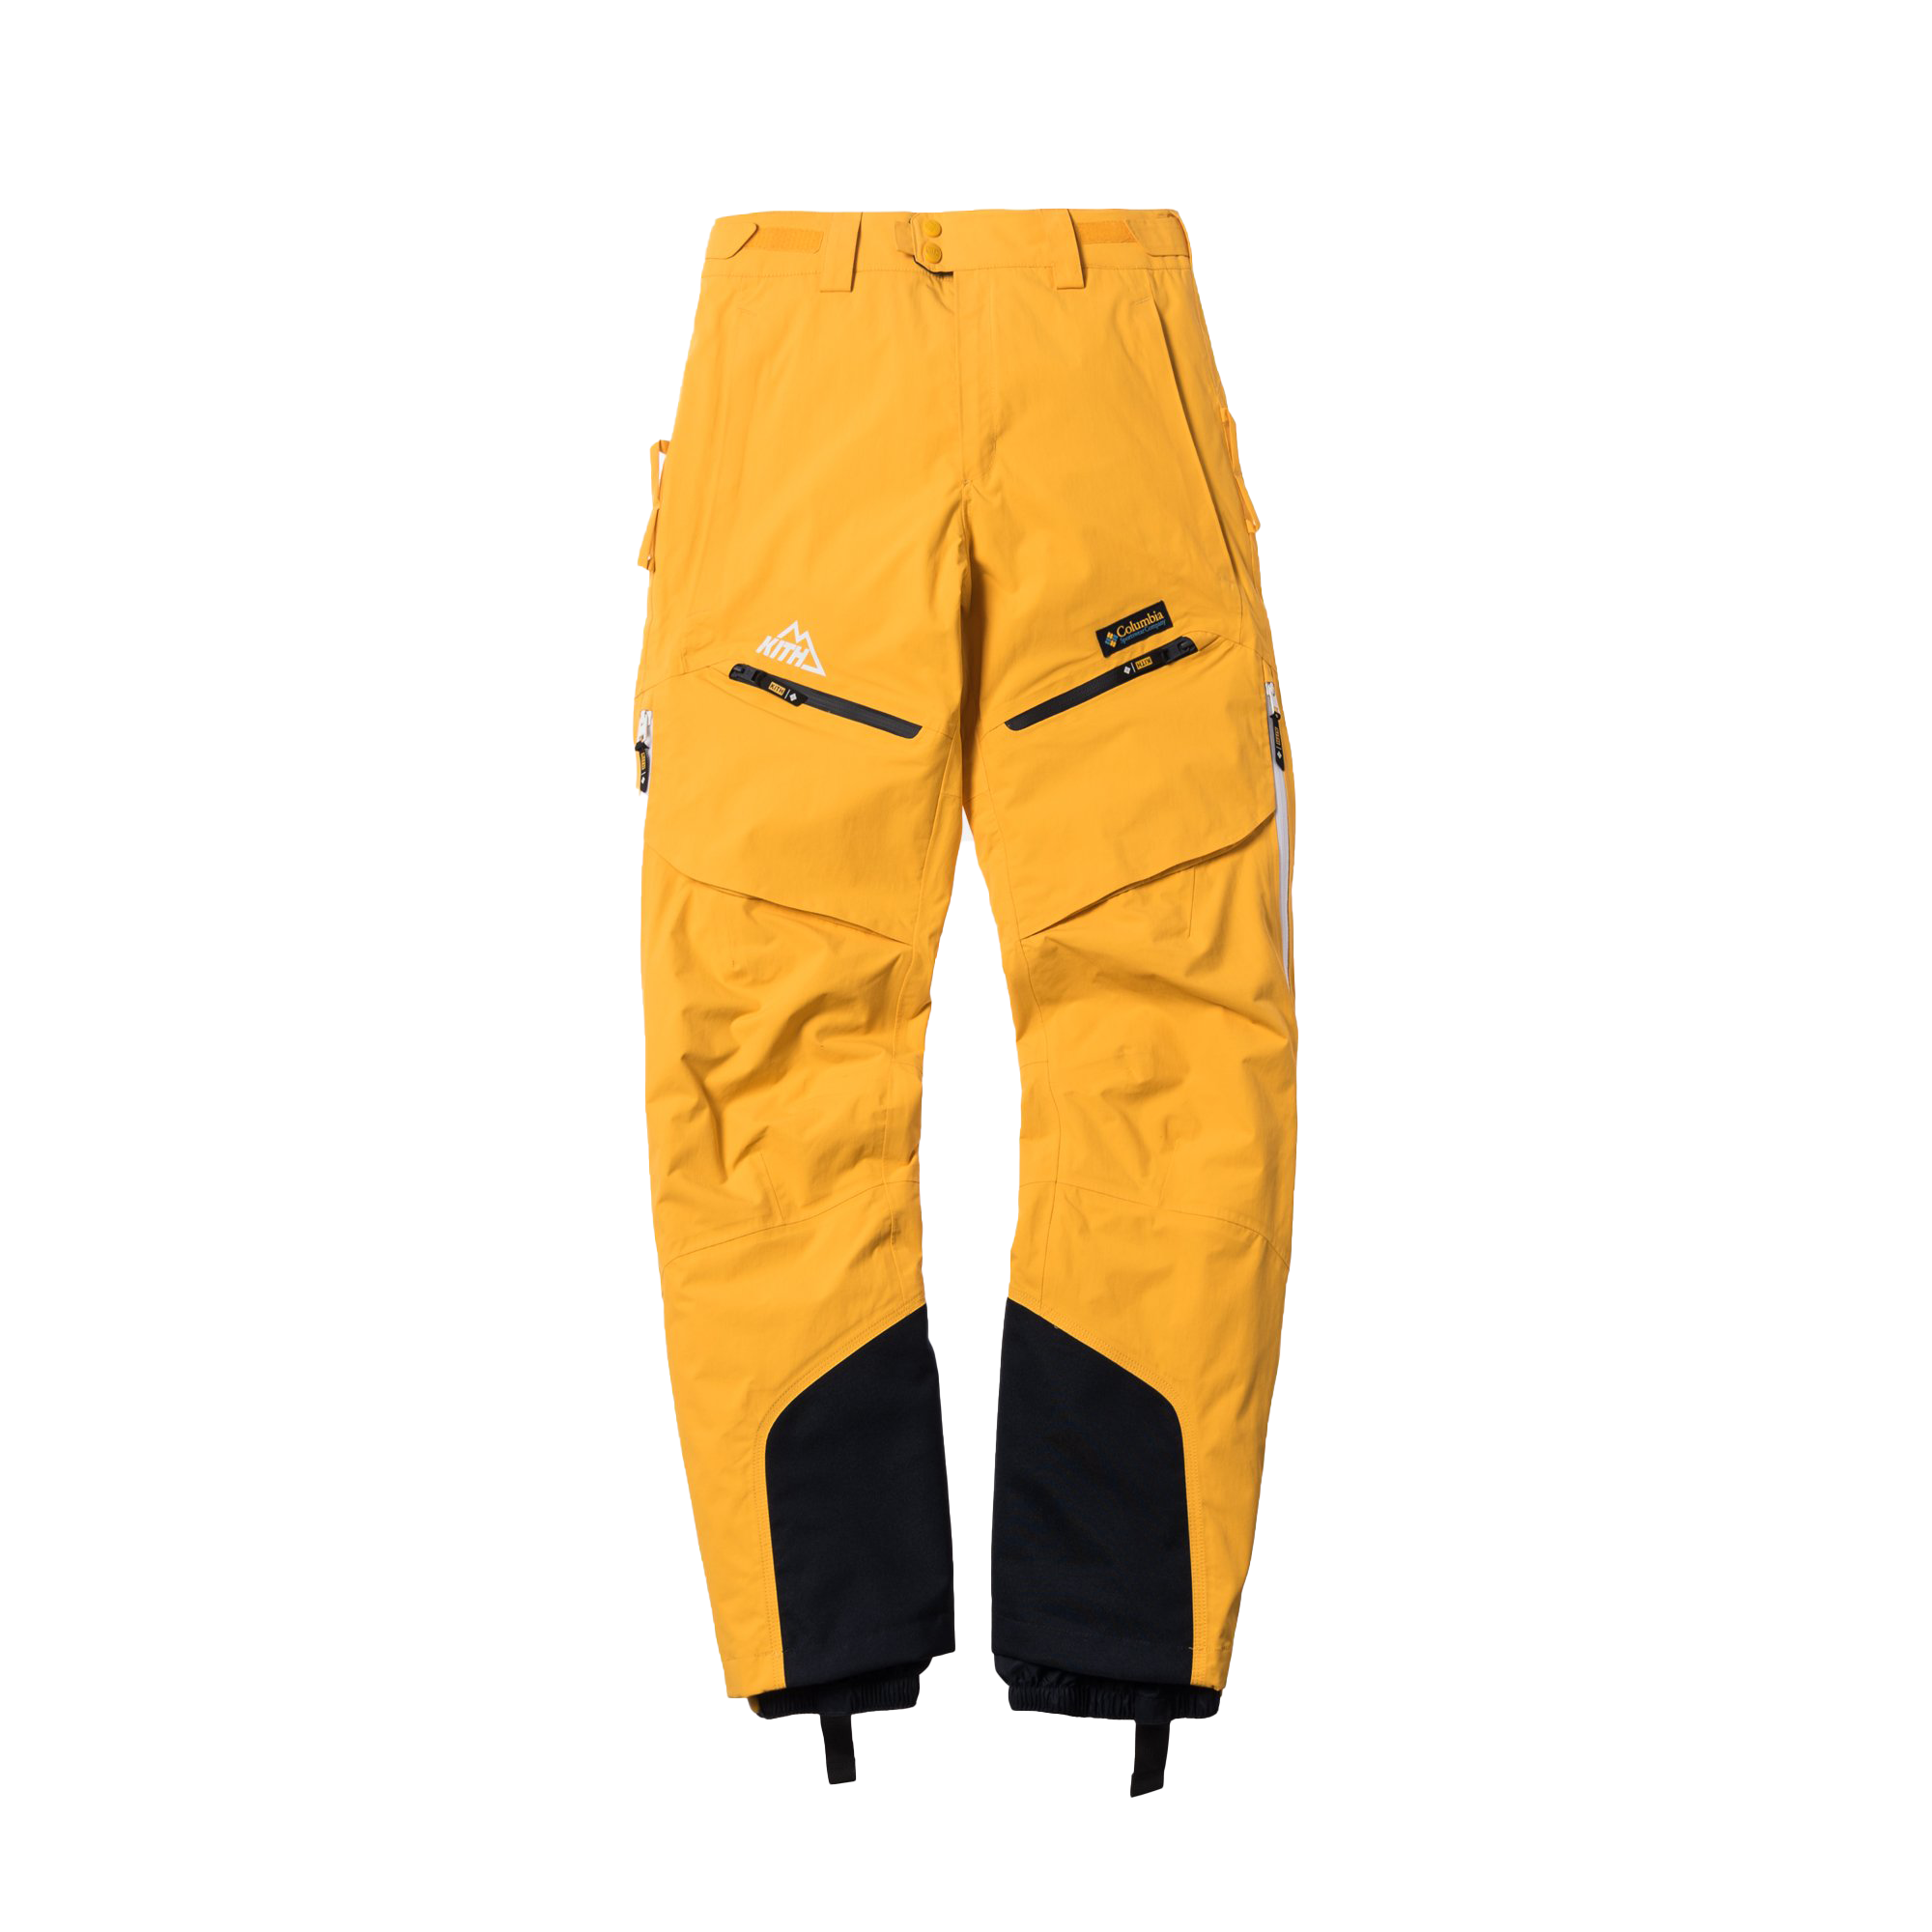 Columbia Bugaboo IV Pant - Ski pants - Men's